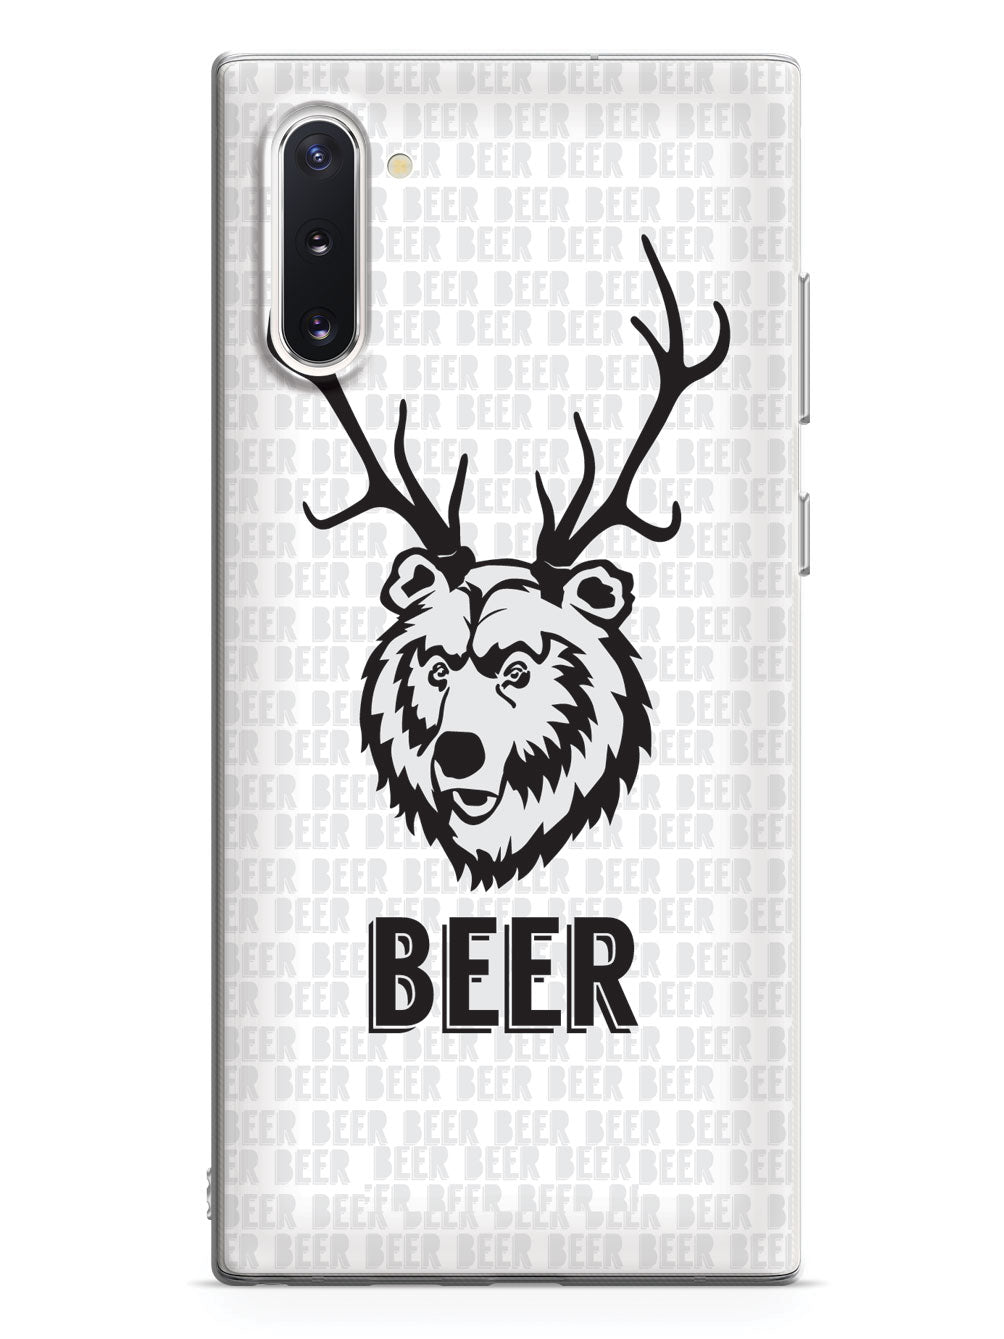 Bear + Deer = Beer Humor Funny Case